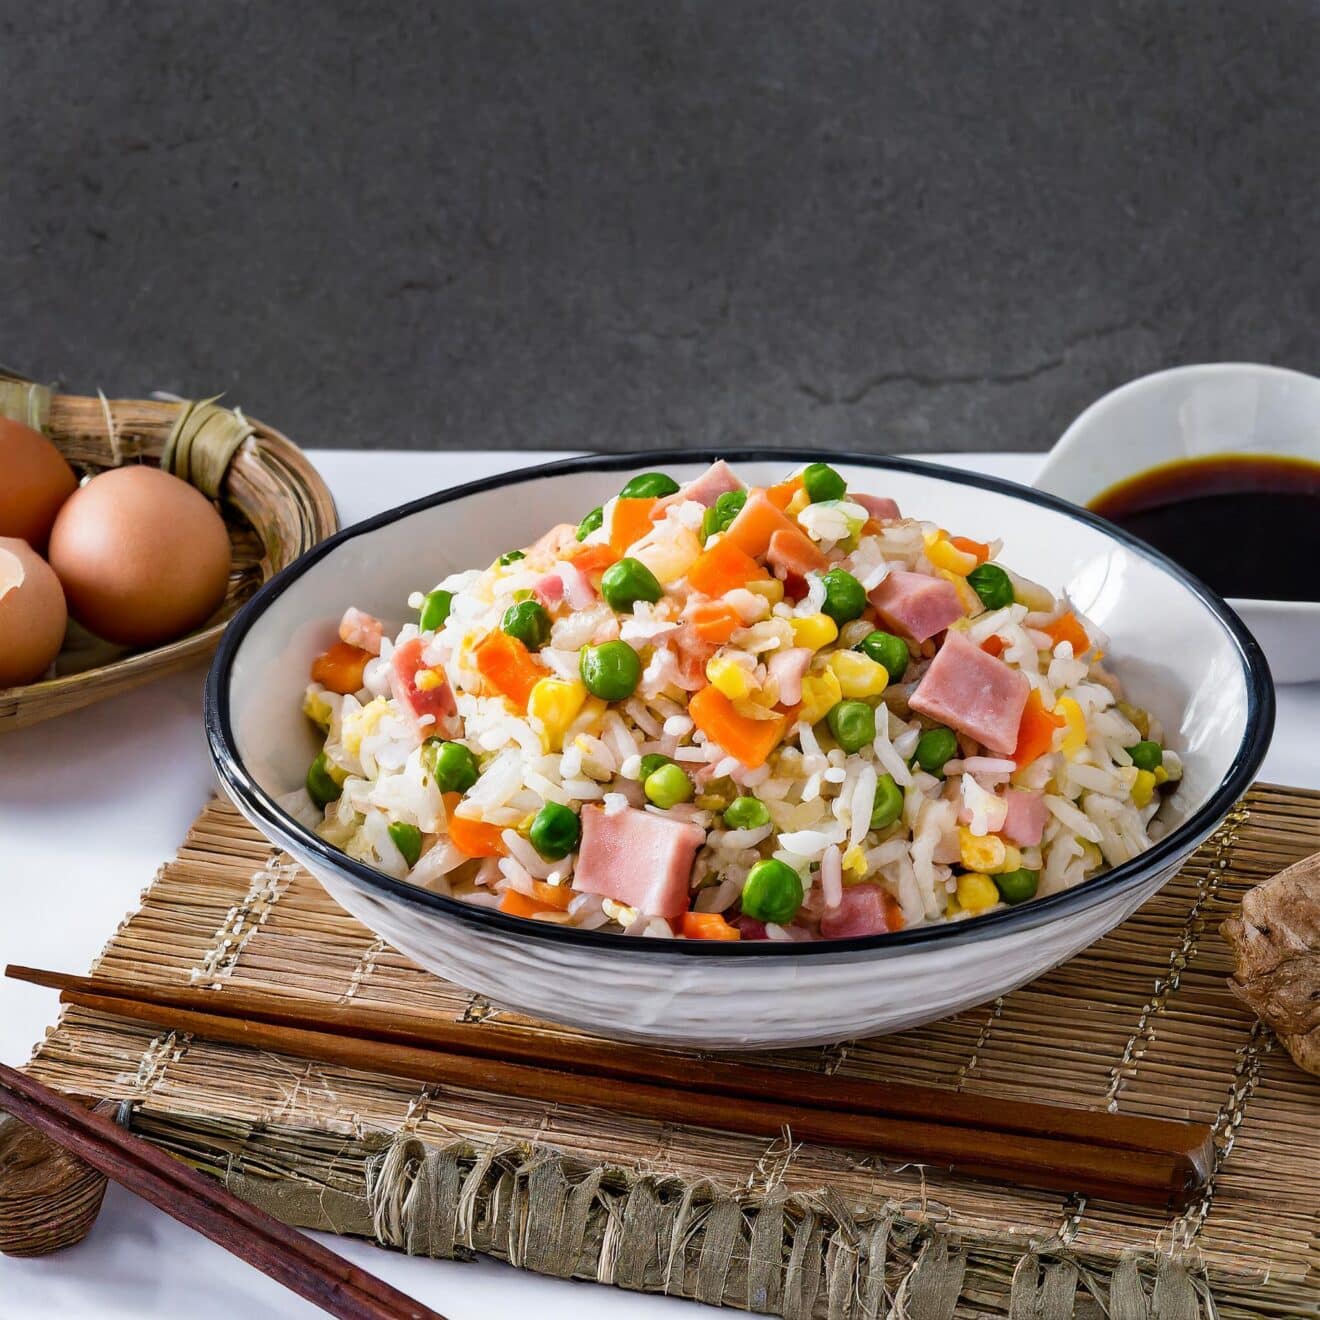 Recette de Riz cantonais simple : un plat délicieux et rapide à préparer